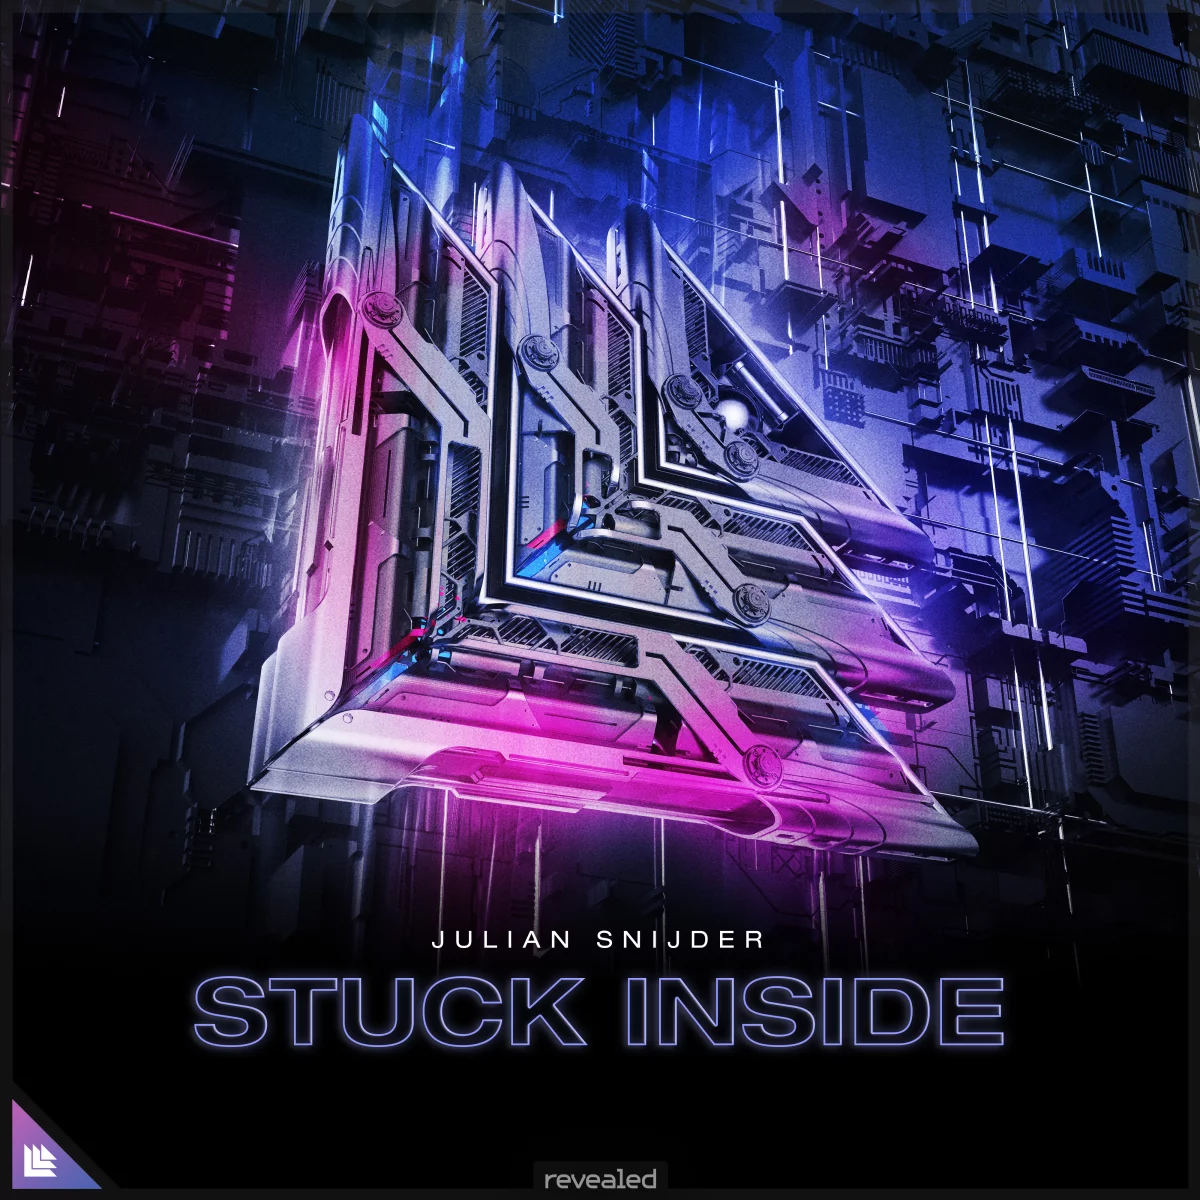 Stuck Inside - Julian Snijder⁠ 